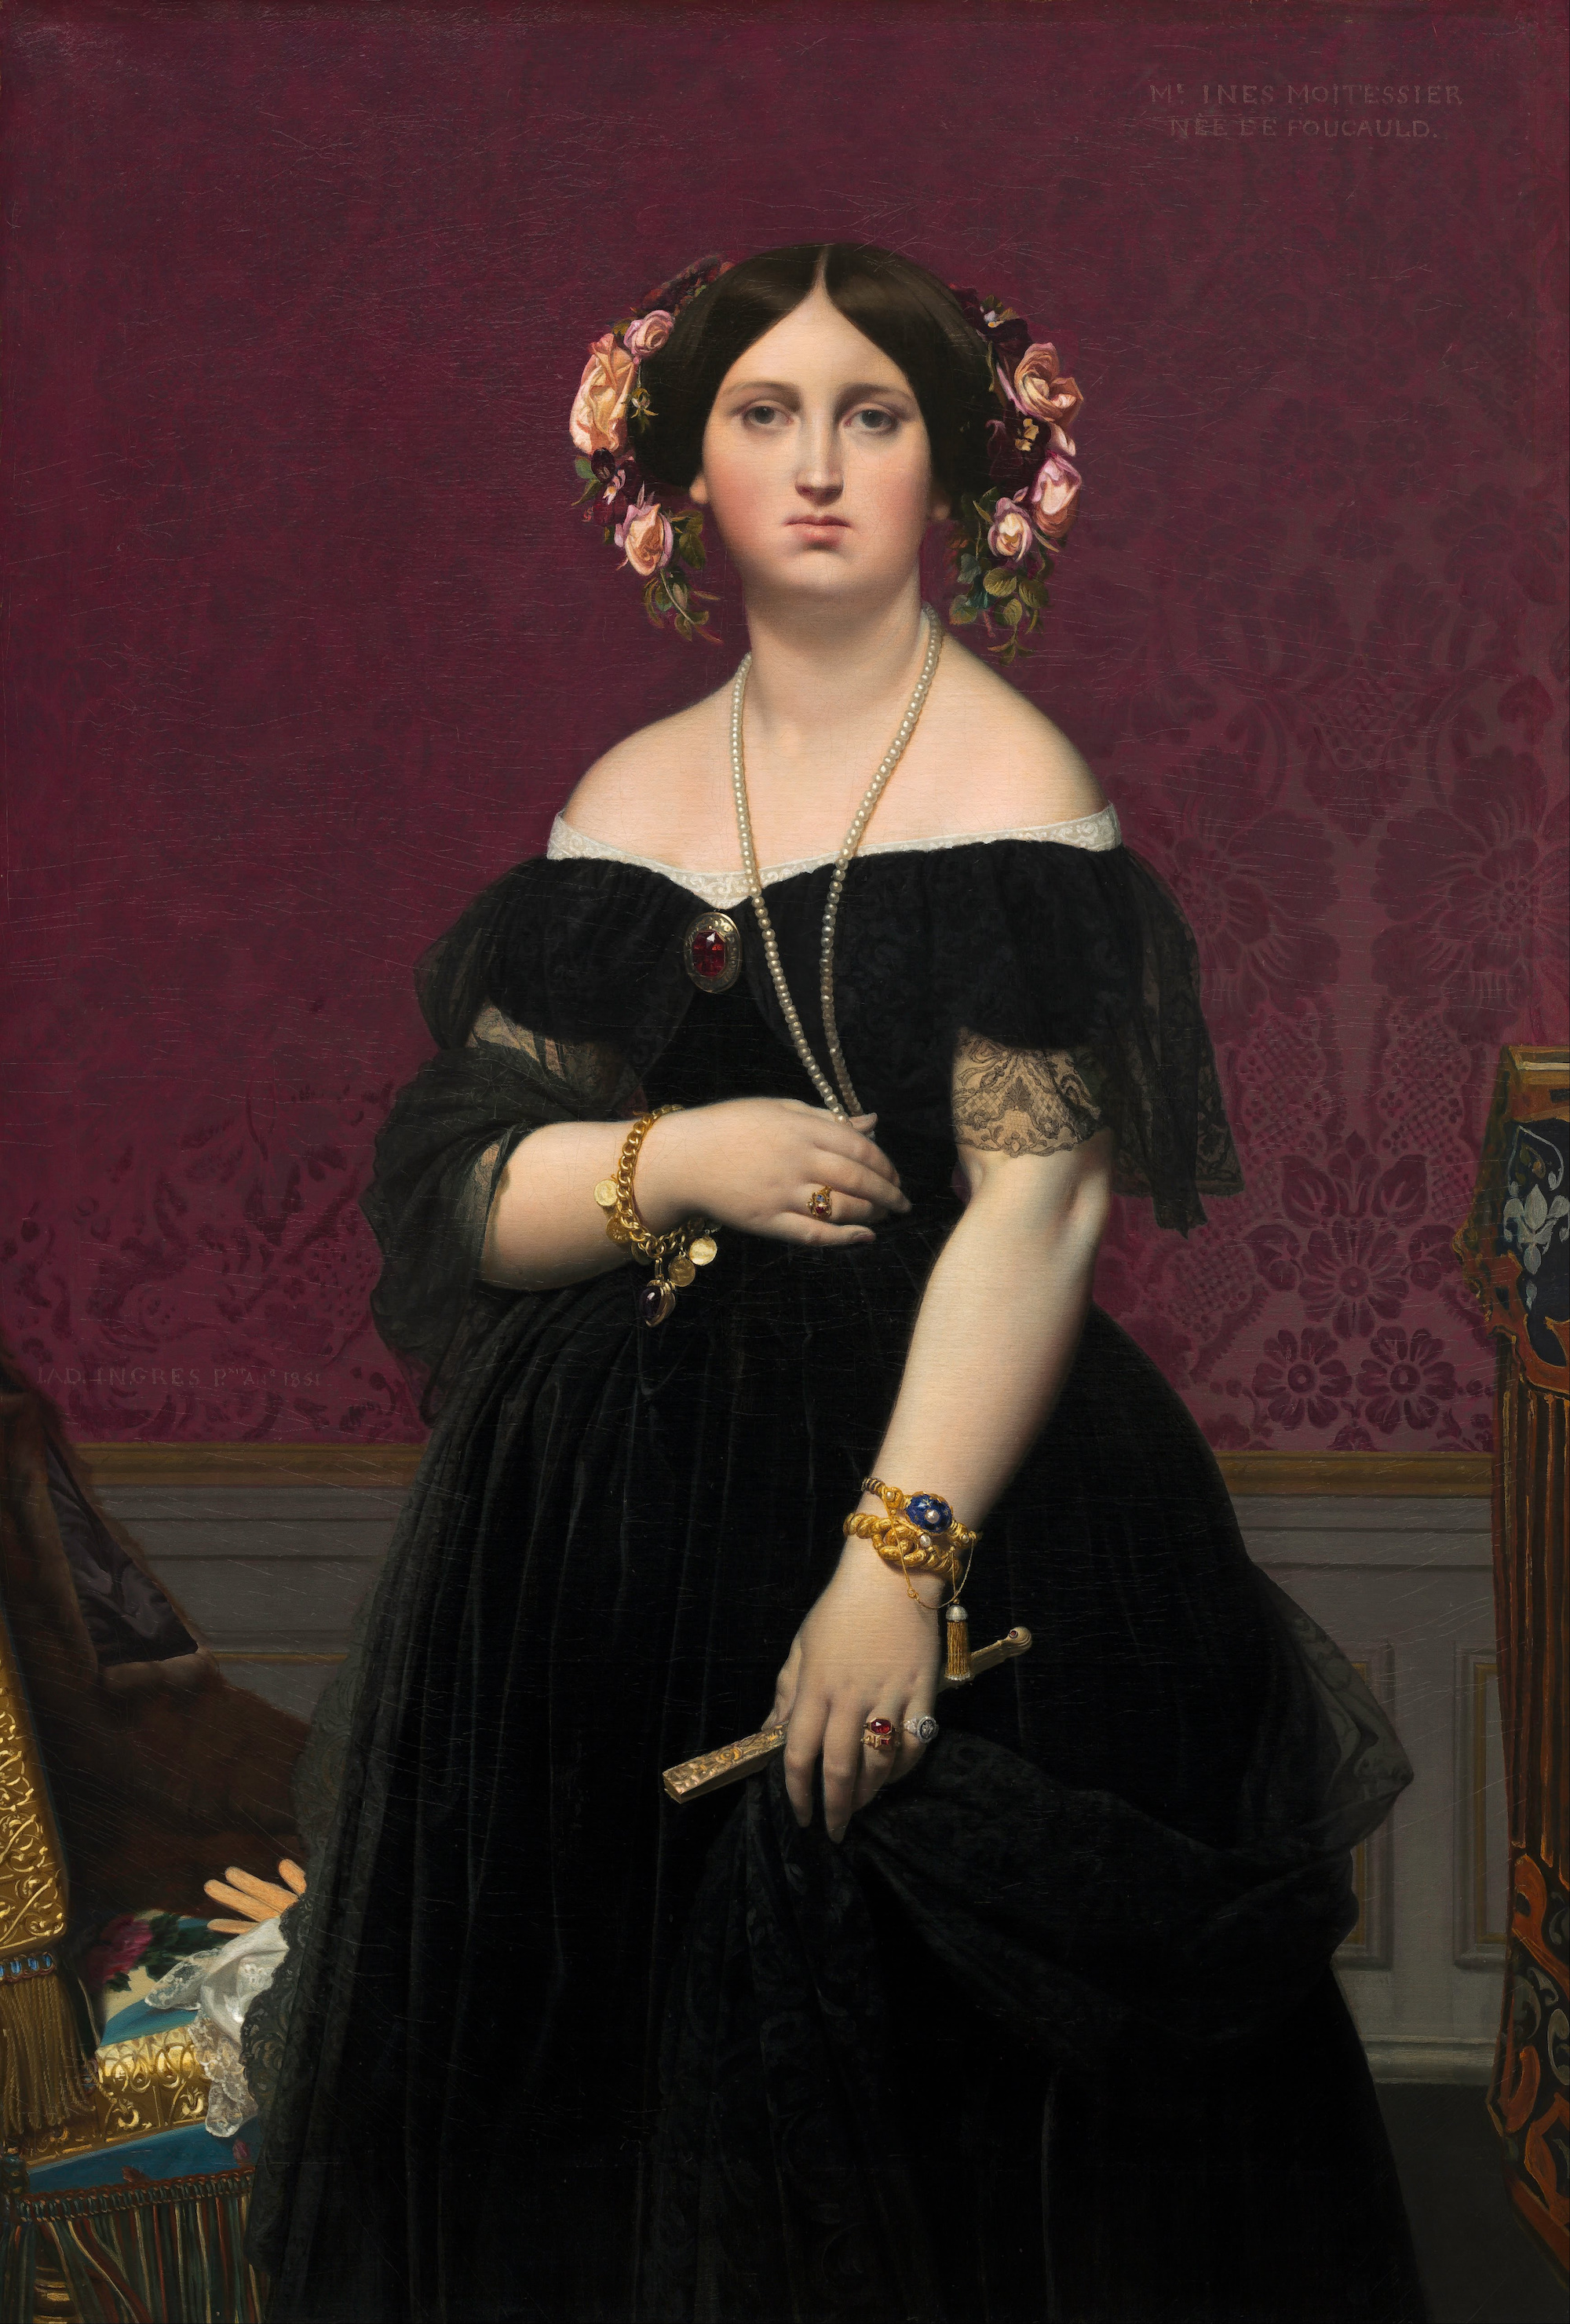 墨瓦特雪夫人 by Jean-Auguste-Dominique Ingres - 1851 - 100 x 147 cm 